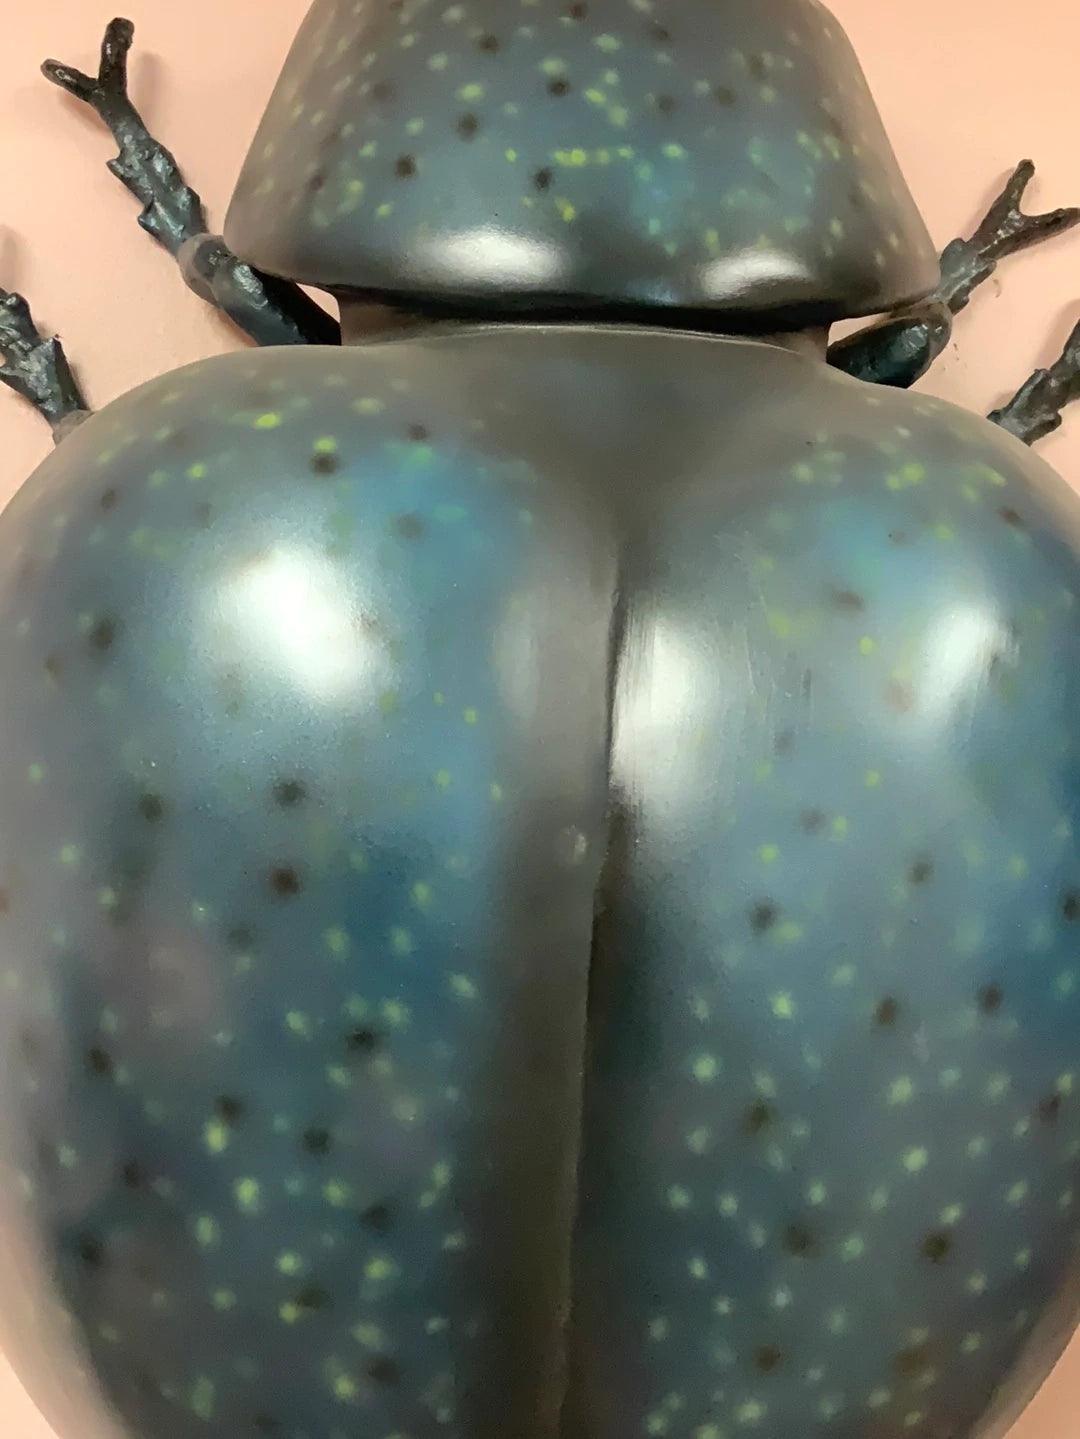 Beetle Statue